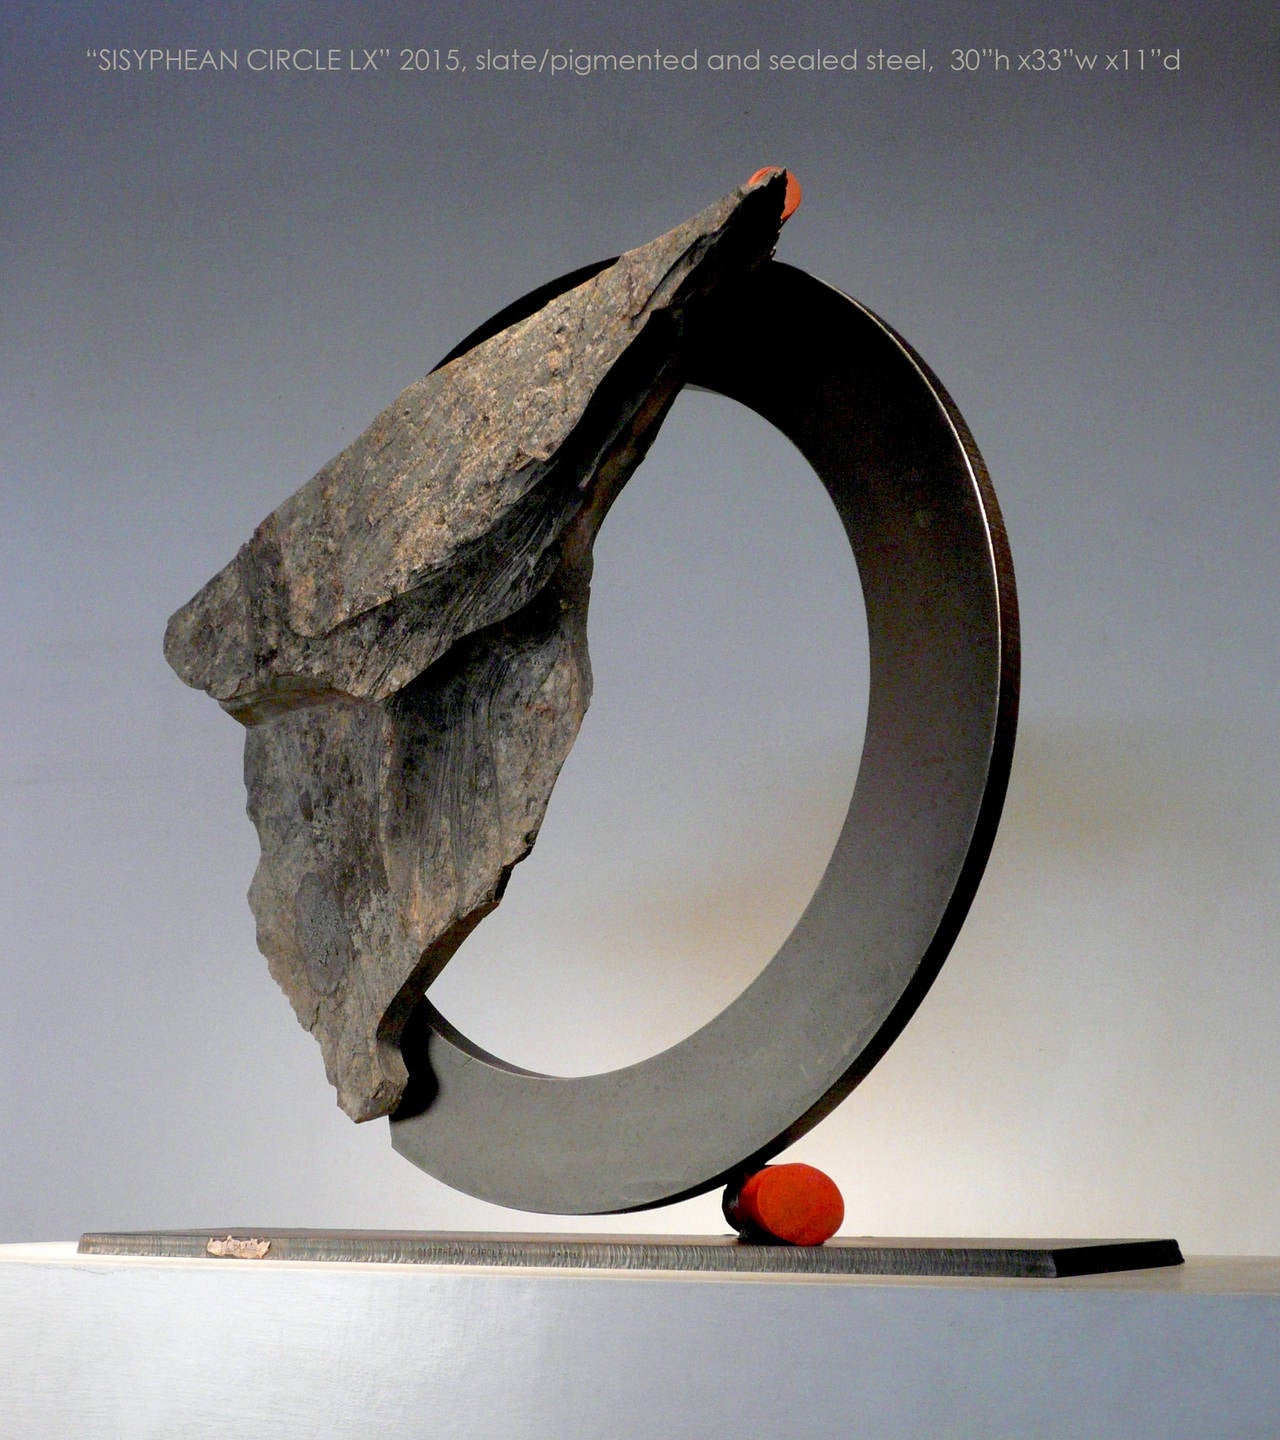 Sisyphean Circle LX - Sculpture by John Van Alstine